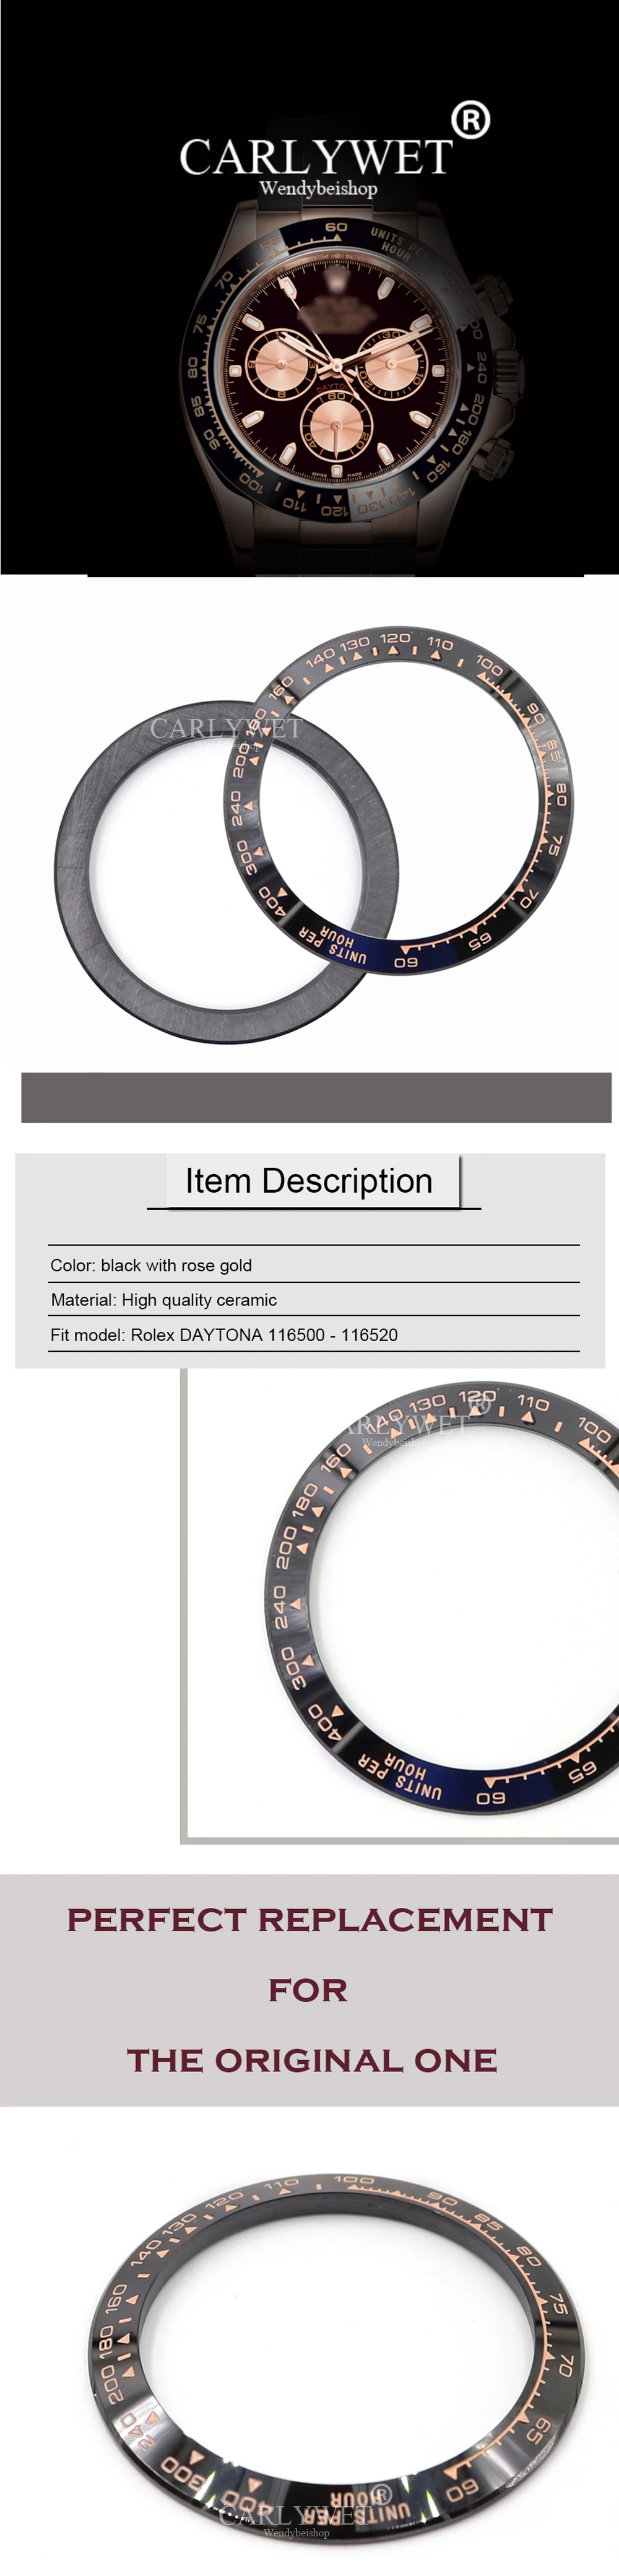 CARLYWET Оптовая DAYTONA Высокое Качество Керамики Черного Цвета с Розовым Золотом Письмо Часы Рамка для 116500-116520